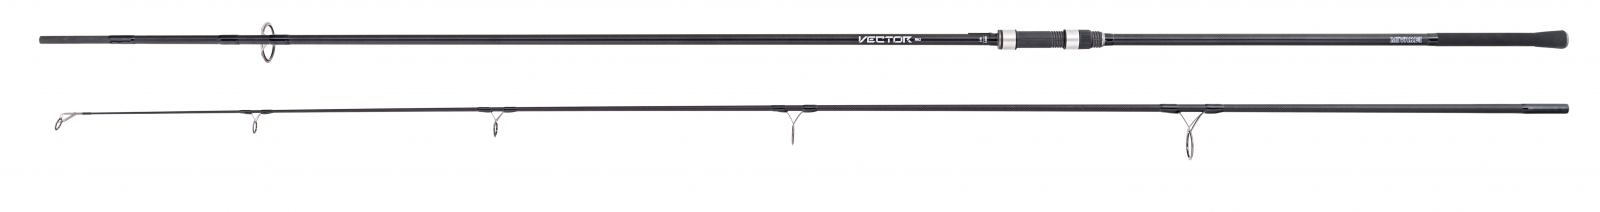 Vector Carp MK2 3,60m 3,5lb